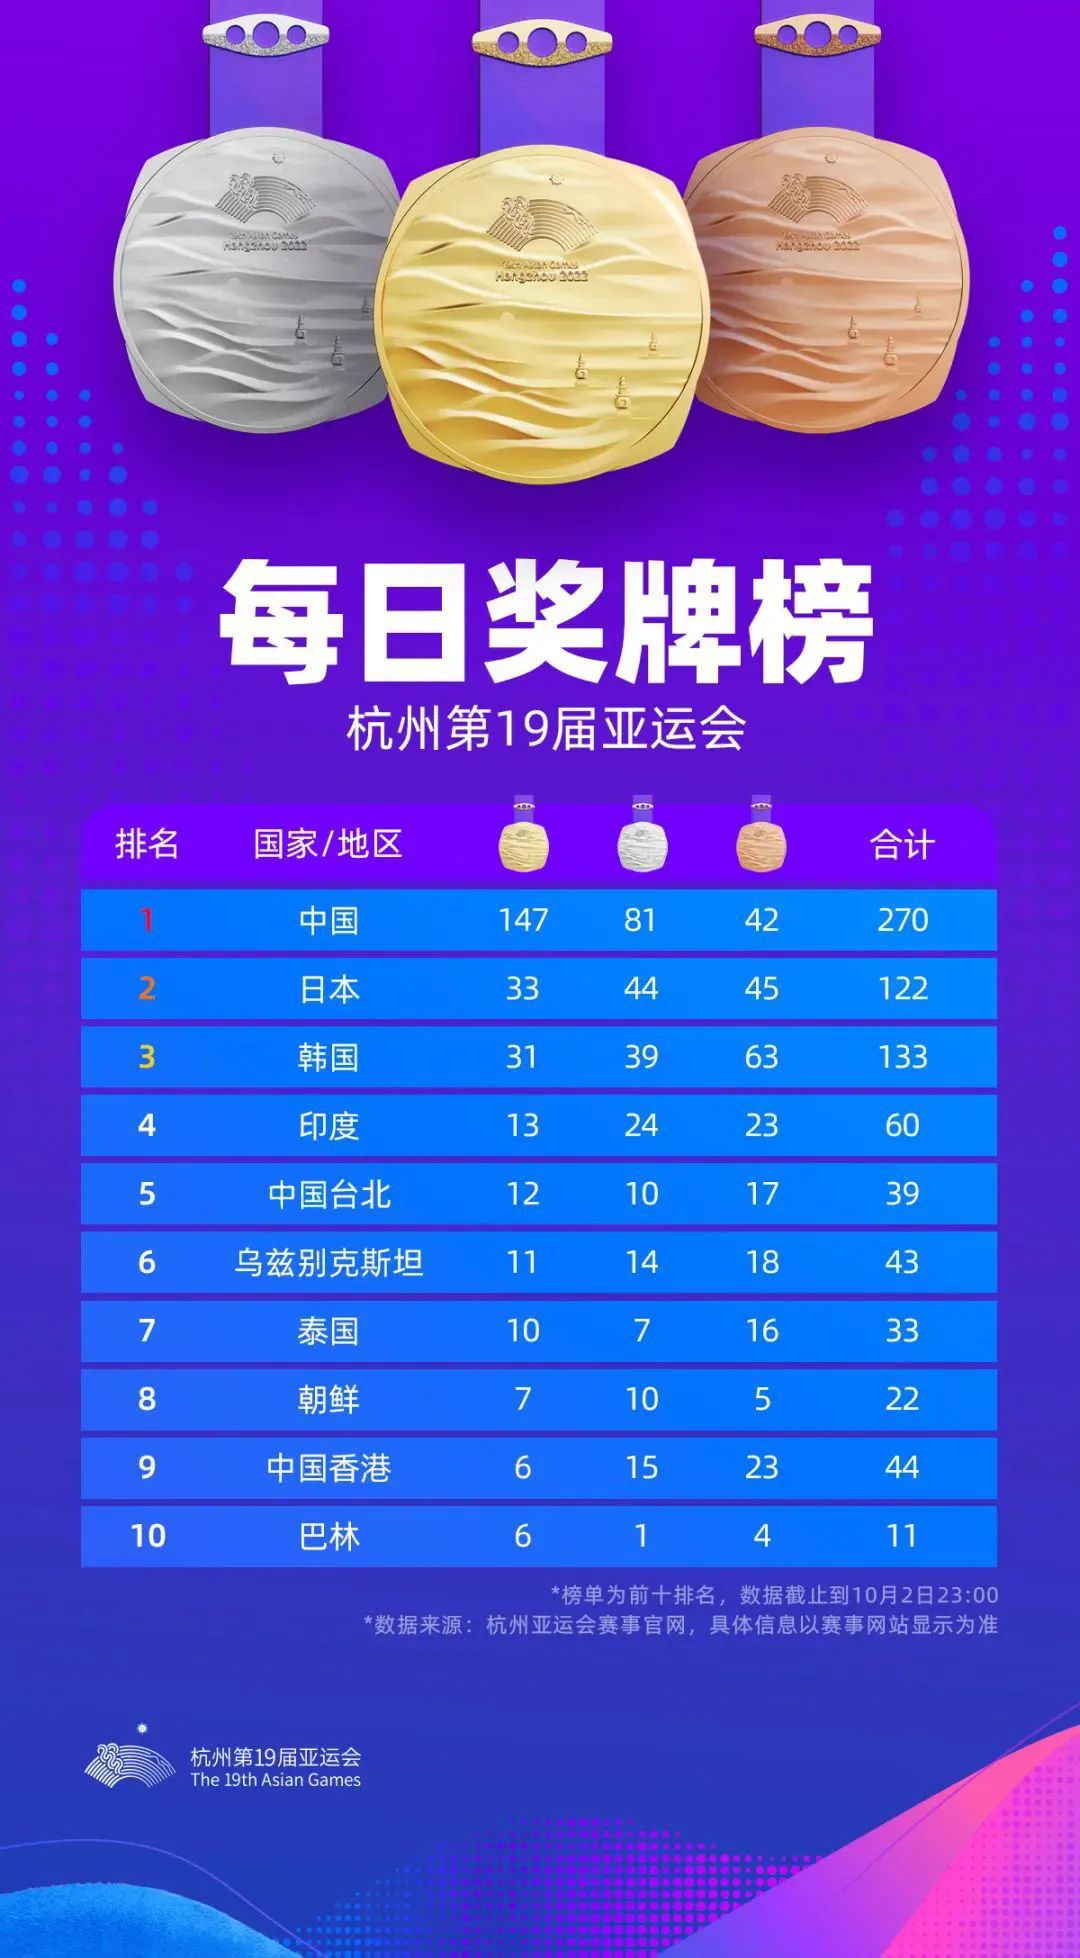 中国队10月2日再添14金总数147金杭州亚运会单日竞赛项目奖牌一览